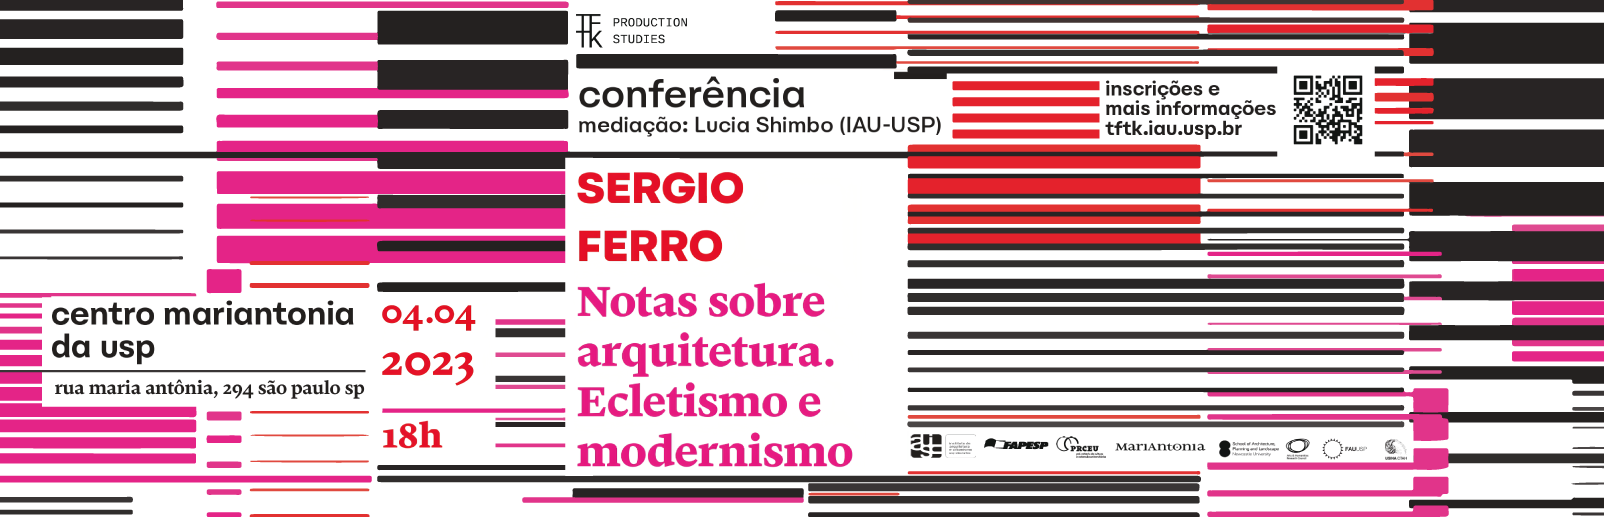 Conferência “Notas sobre arquitetura. Ecletismo e modernismo” com Sergio Ferro